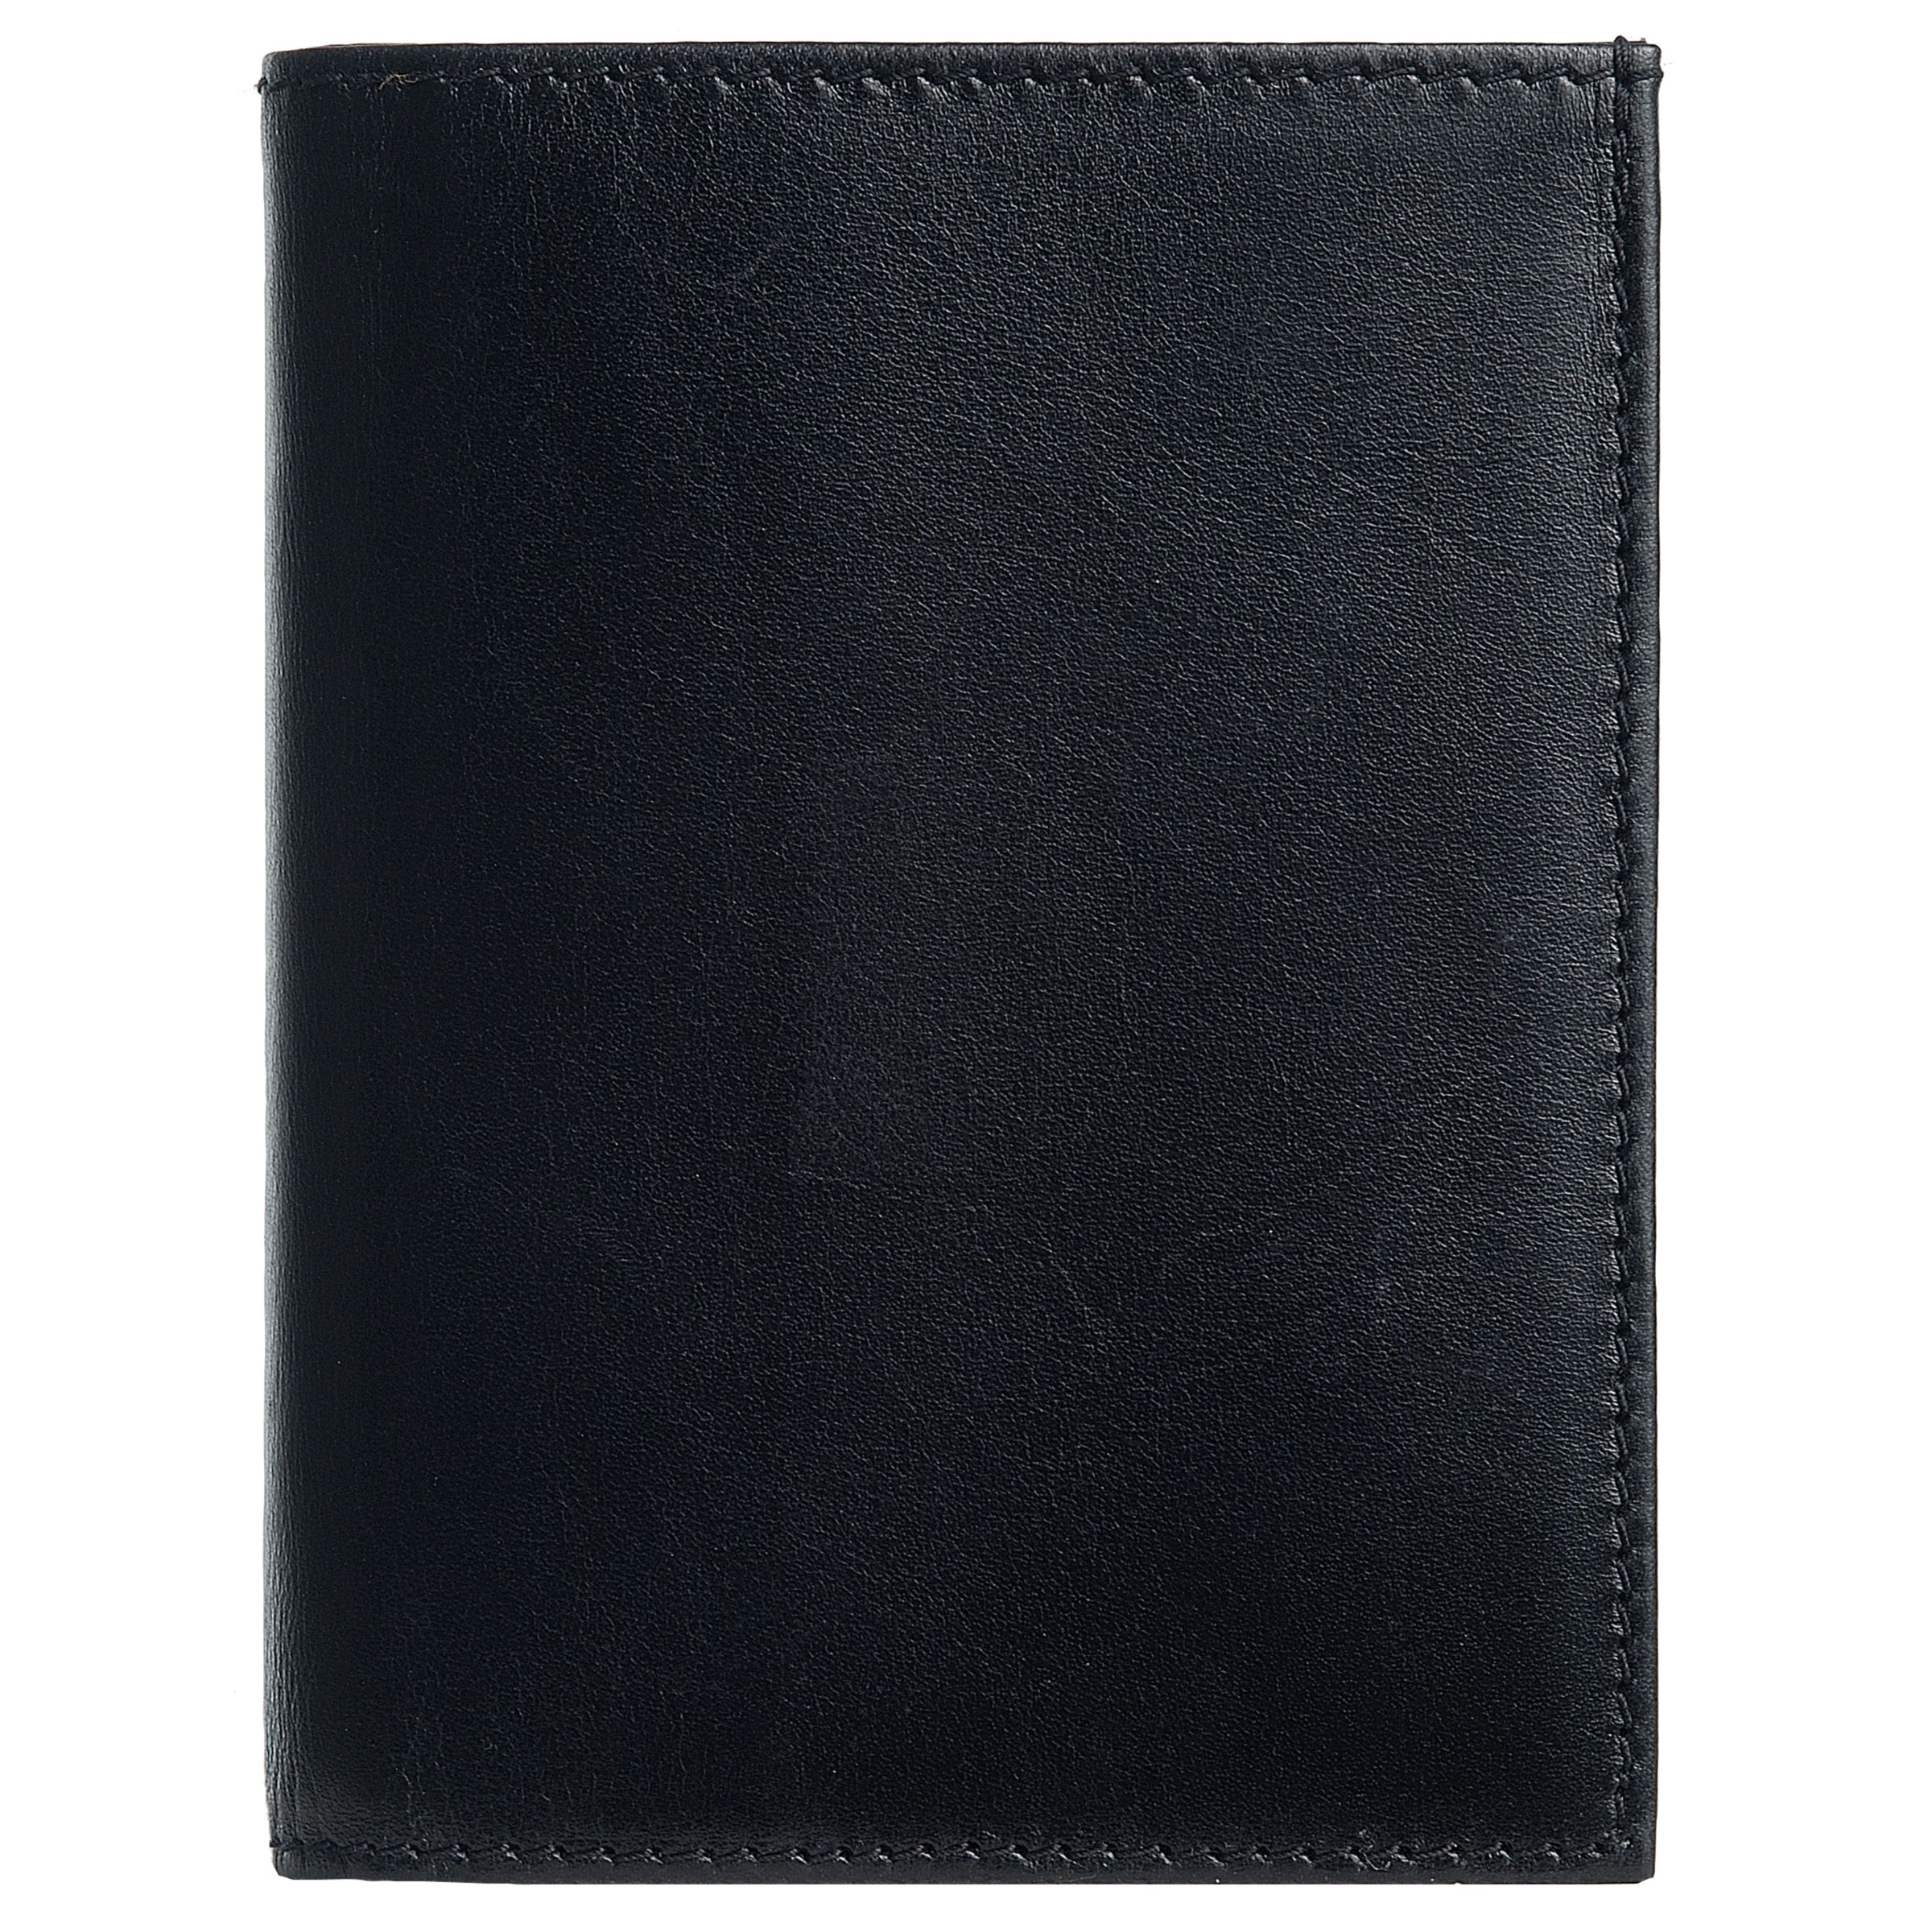 Launer Premium Leather Card Case, Black 51519